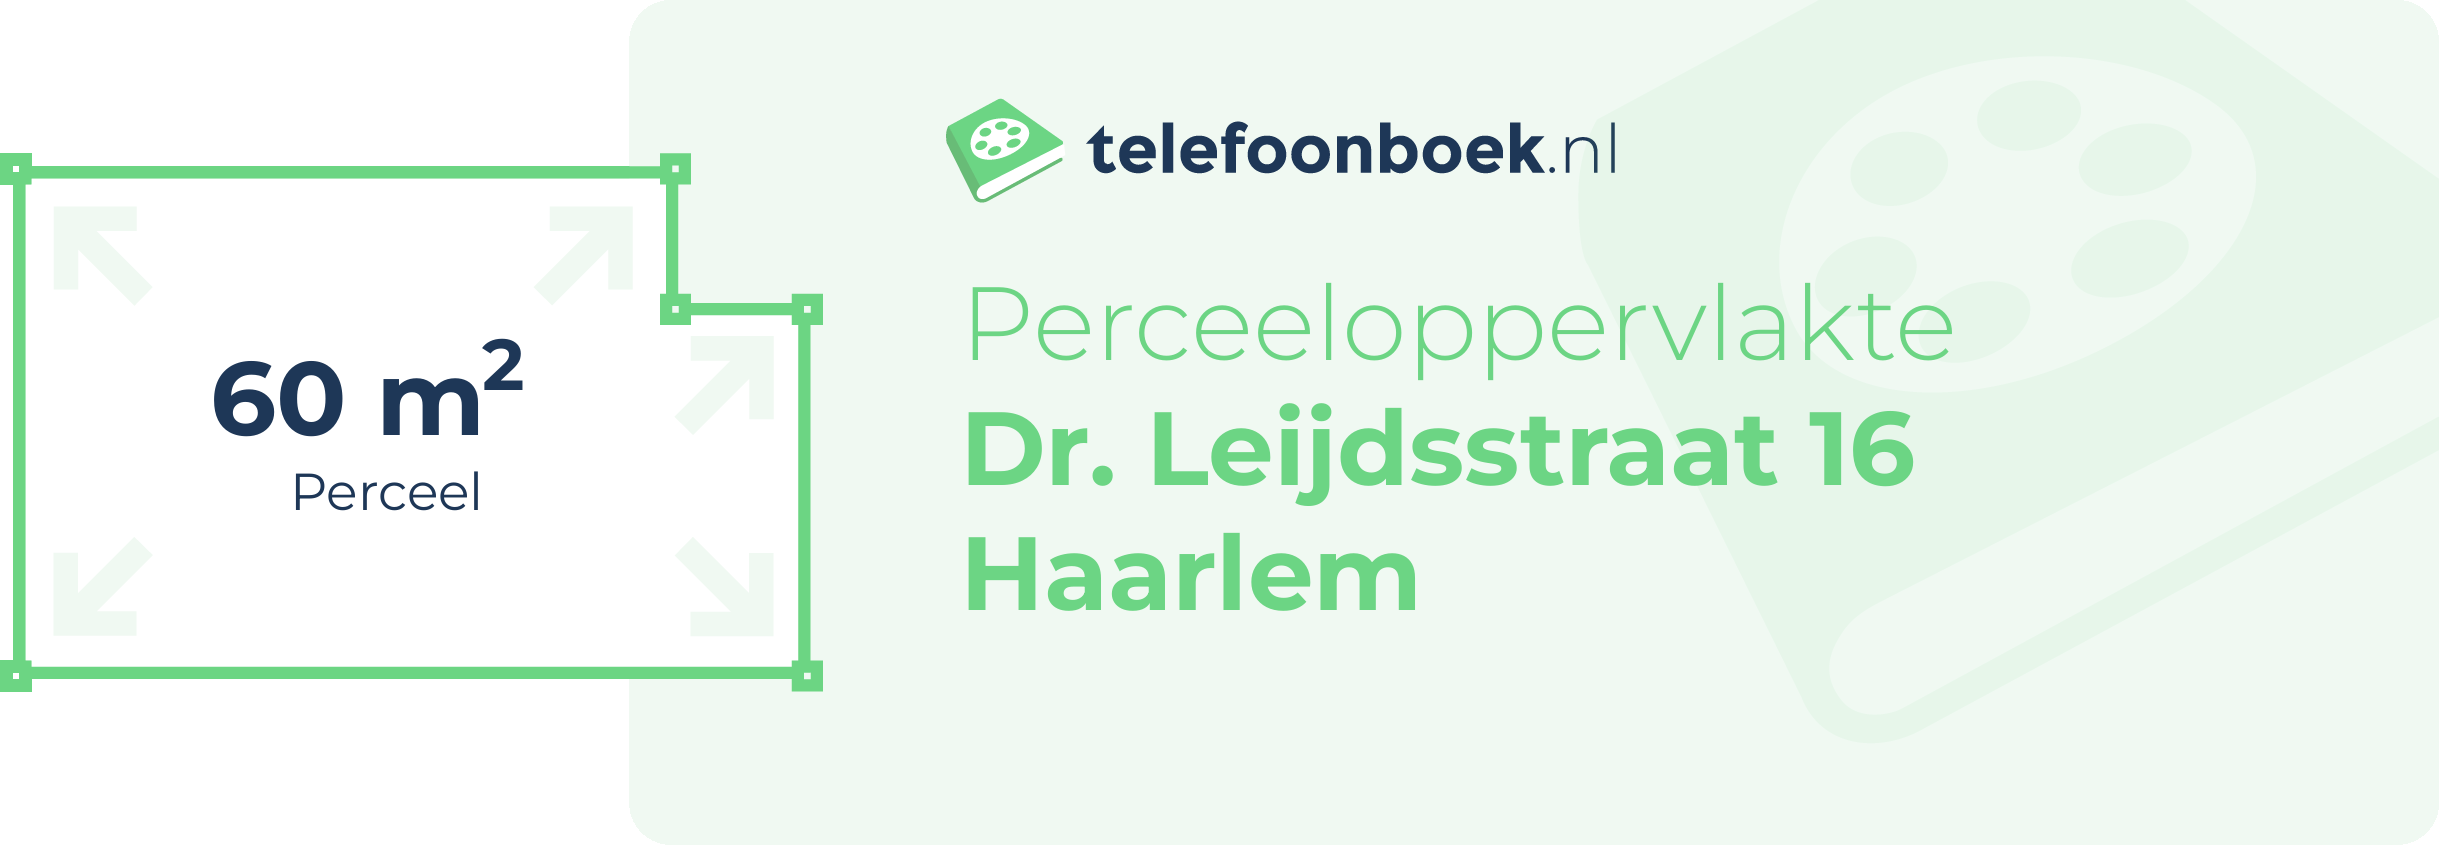 Perceeloppervlakte Dr. Leijdsstraat 16 Haarlem